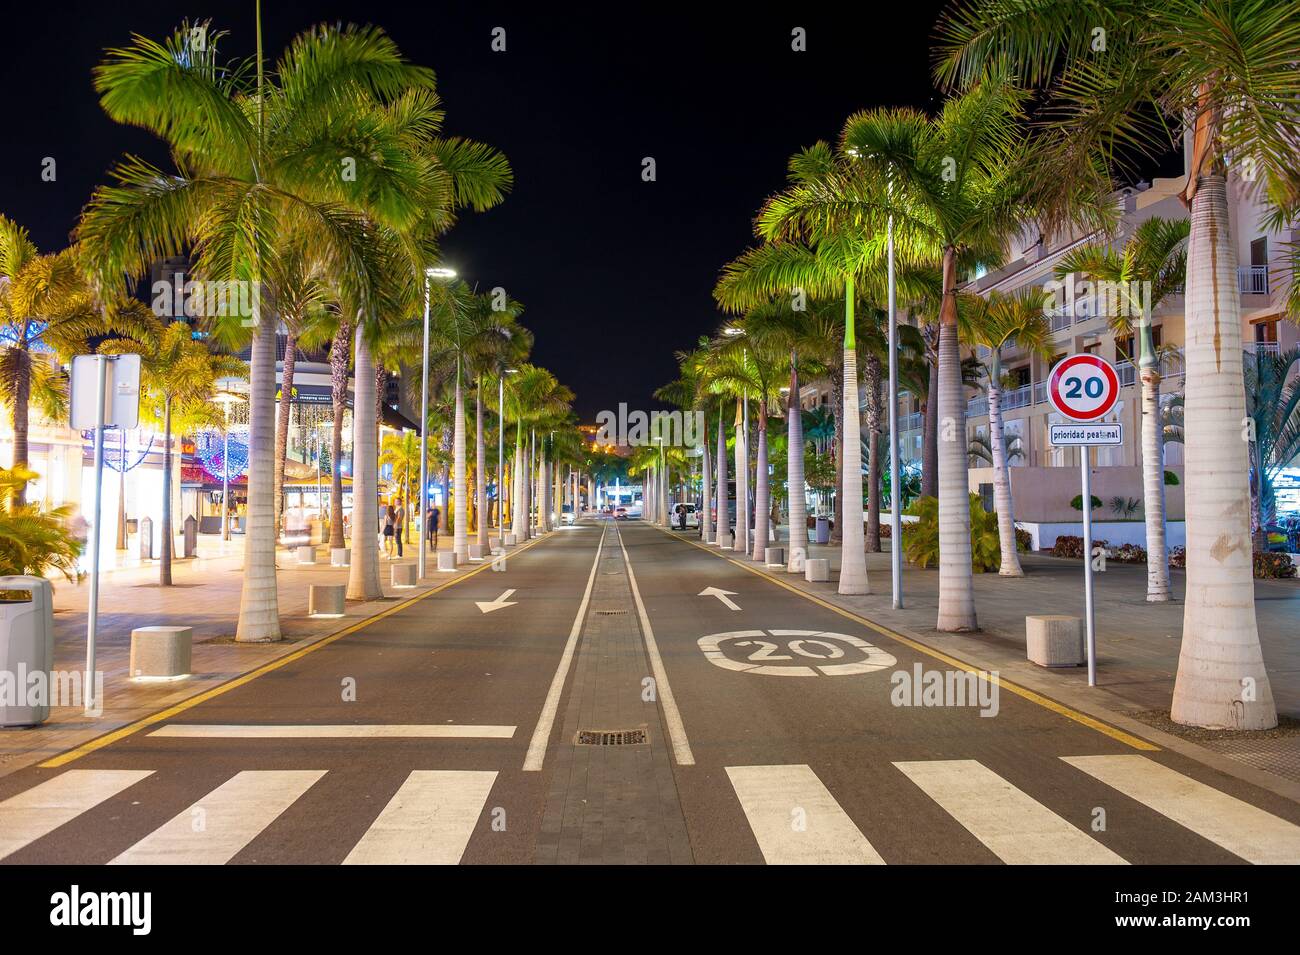 LOS CRISTIANOS - Teneriffa, SPANIEN - Dec 29, 2019: Boulevard Avenida de las Americas in der beliebten Stadt Los Cristianos auf der Kanarischen Insel Teneri Stockfoto